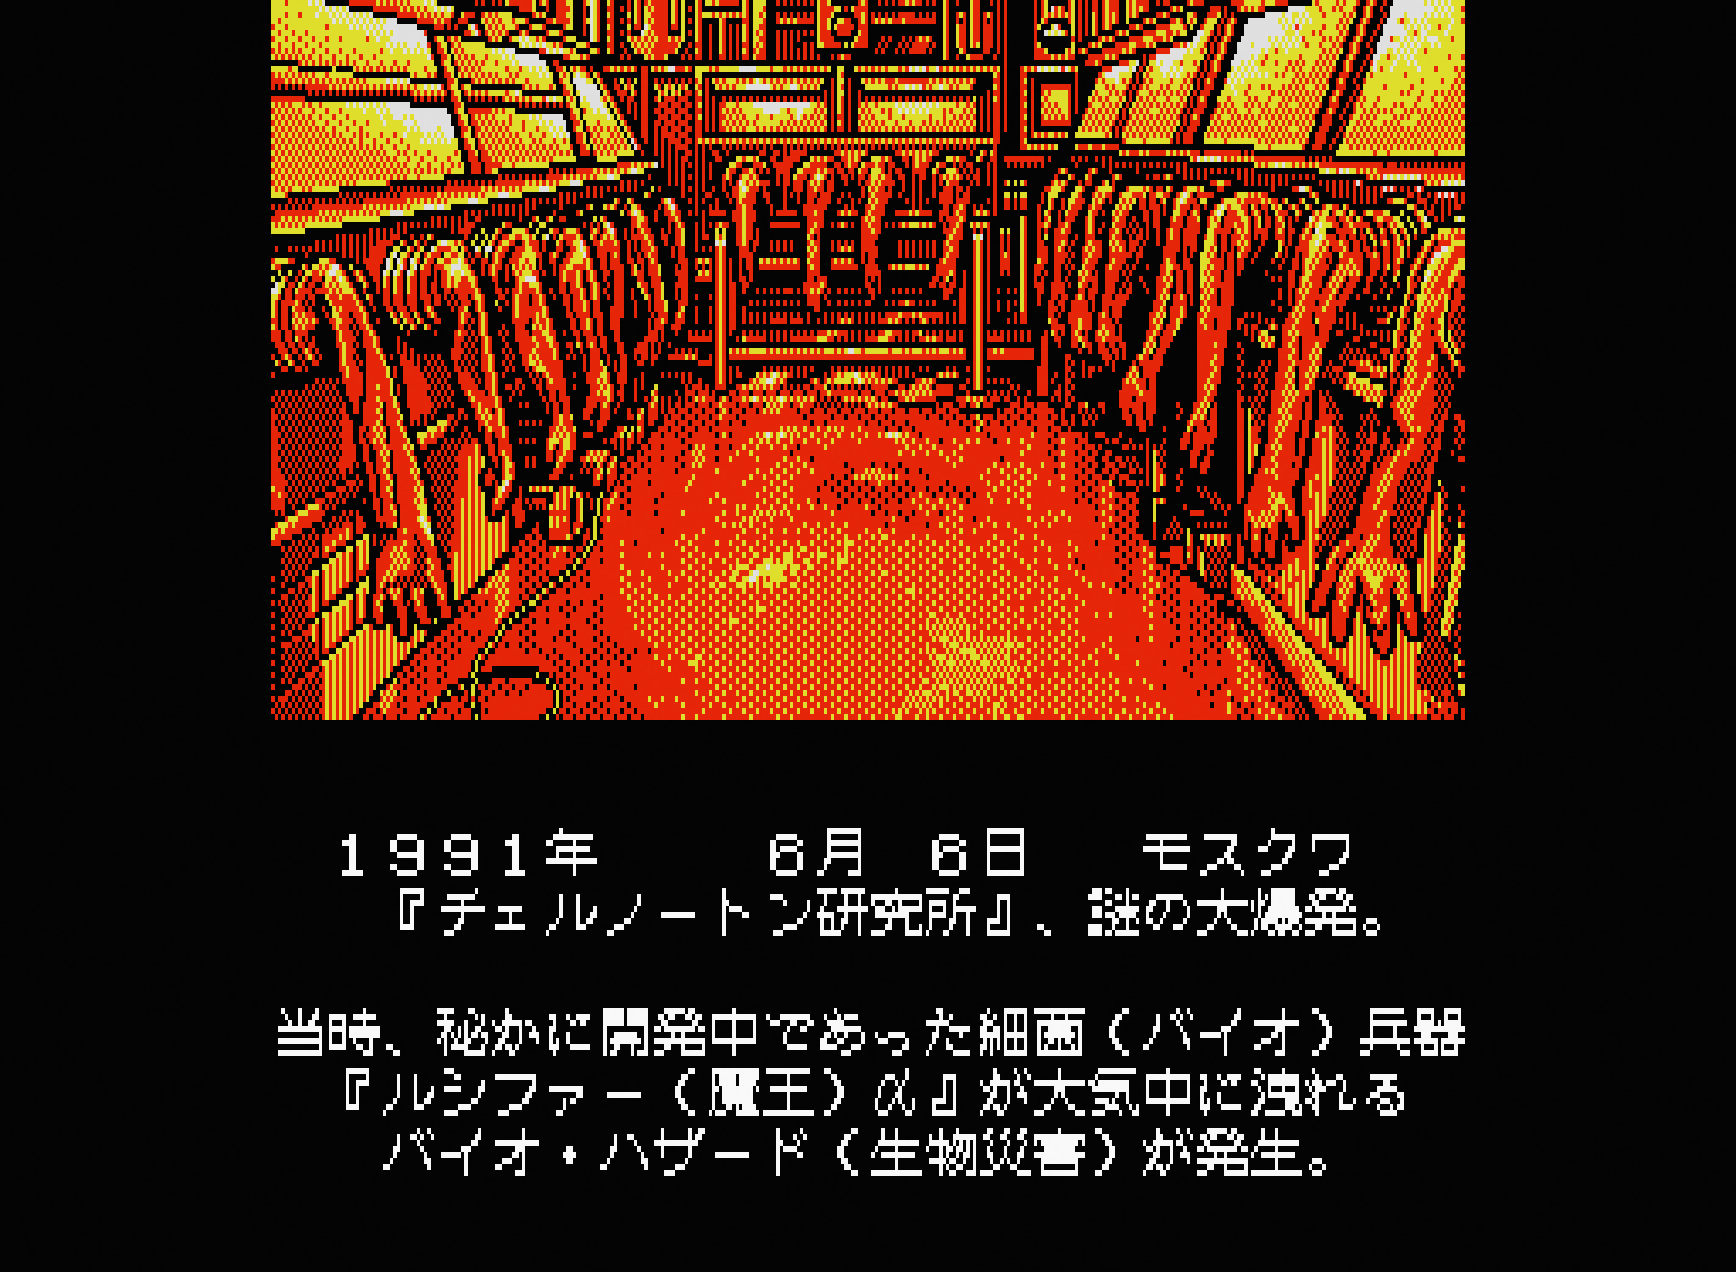 スナッチャー for MSX2 (C)1988 コナミ